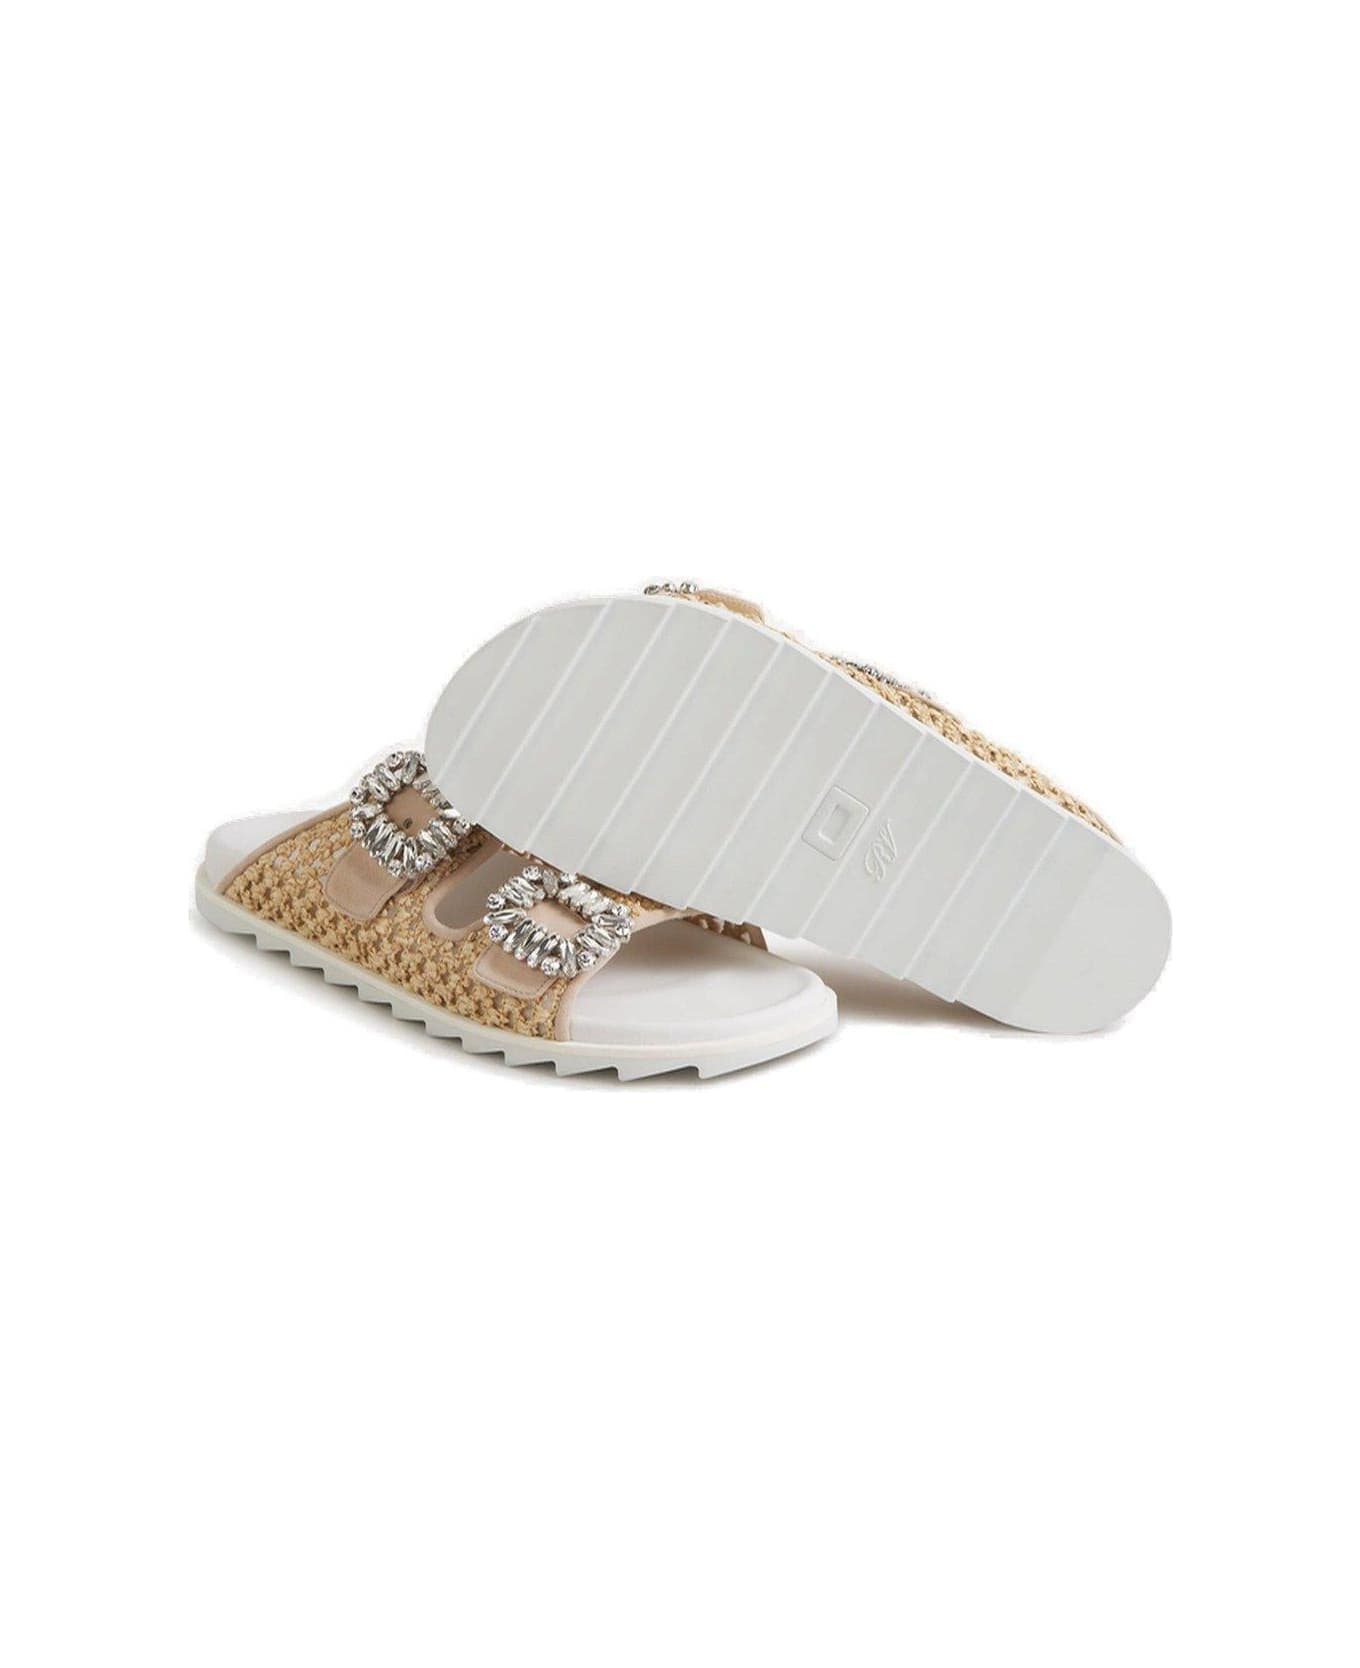 Roger Vivier Embellished Slip-on Sandals - Beige